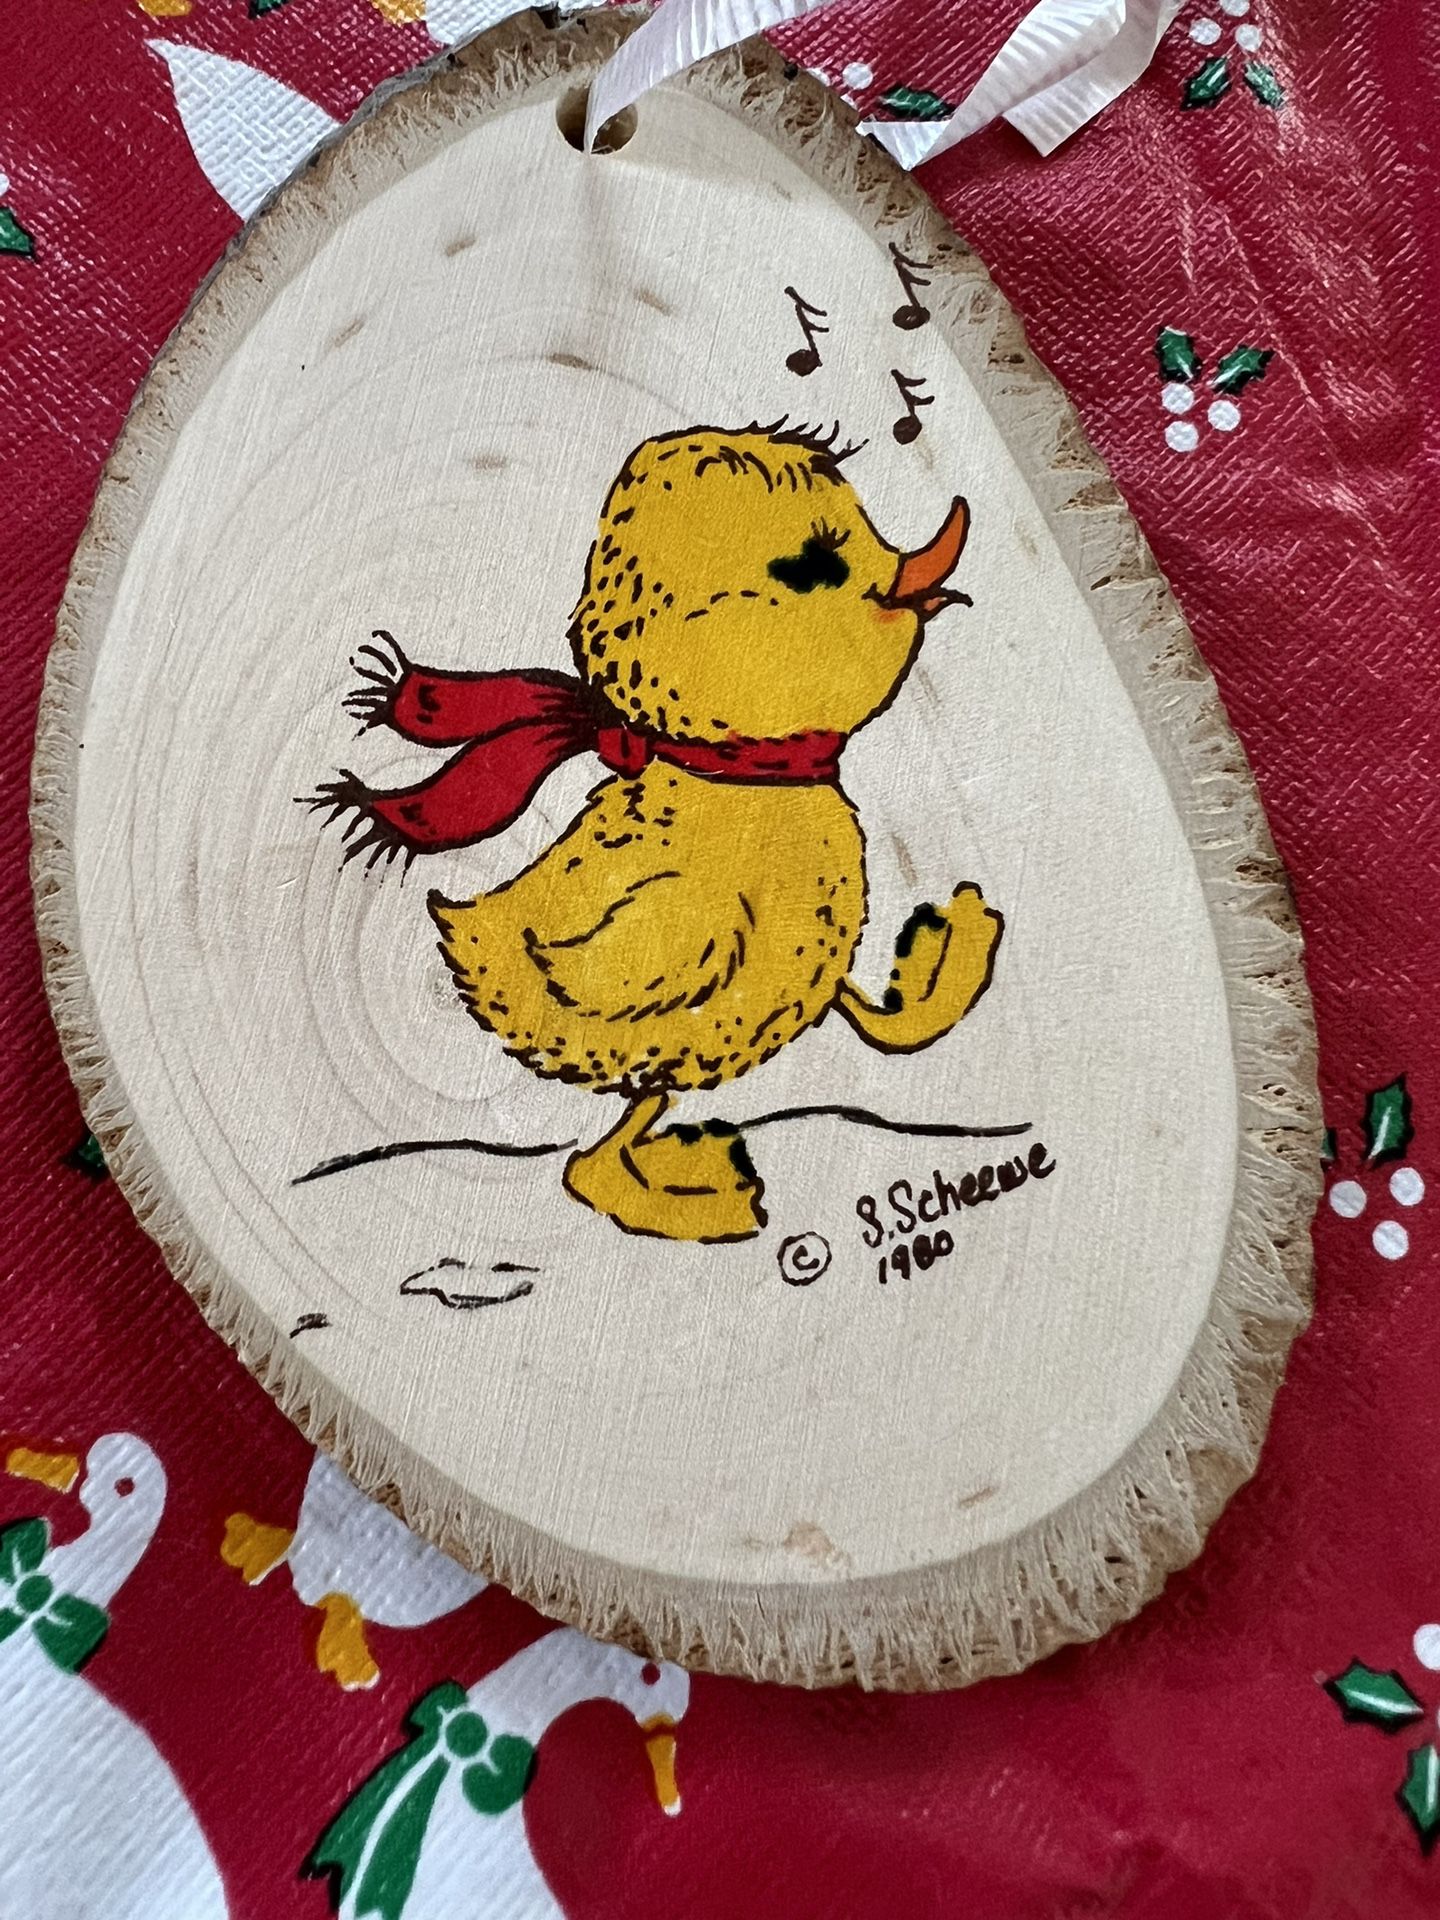 Wood Christmas Ornament Scheewe ~1978 Vintage Baby Duck On Wood Christmas Tree Ornament Woodburning